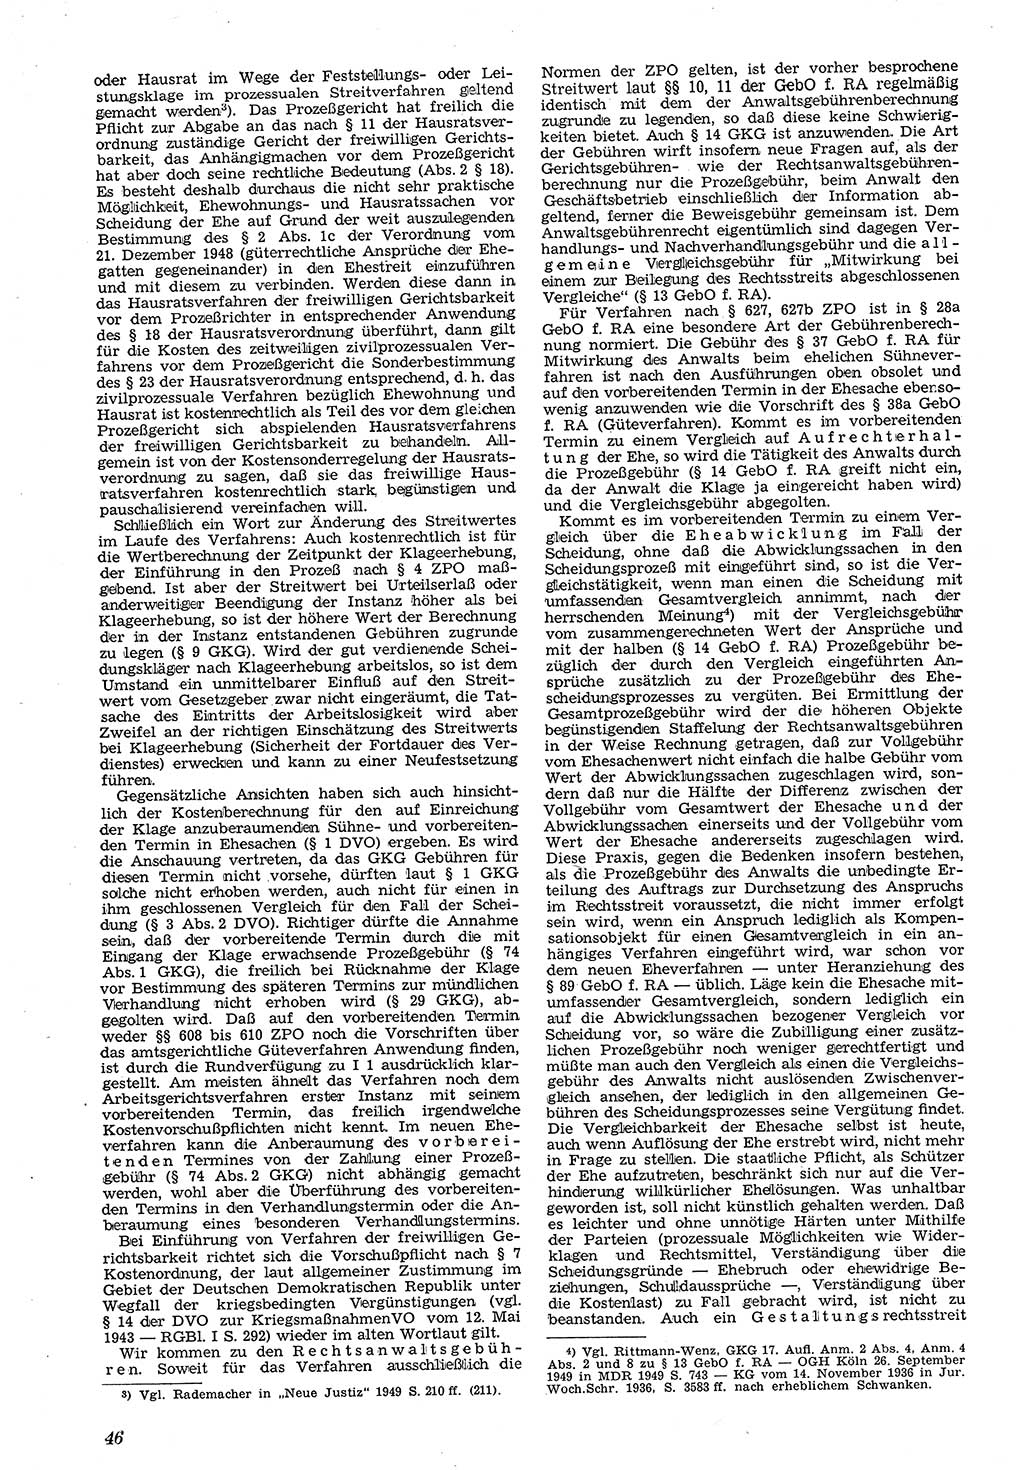 Neue Justiz (NJ), Zeitschrift für Recht und Rechtswissenschaft [Deutsche Demokratische Republik (DDR)], 4. Jahrgang 1950, Seite 46 (NJ DDR 1950, S. 46)